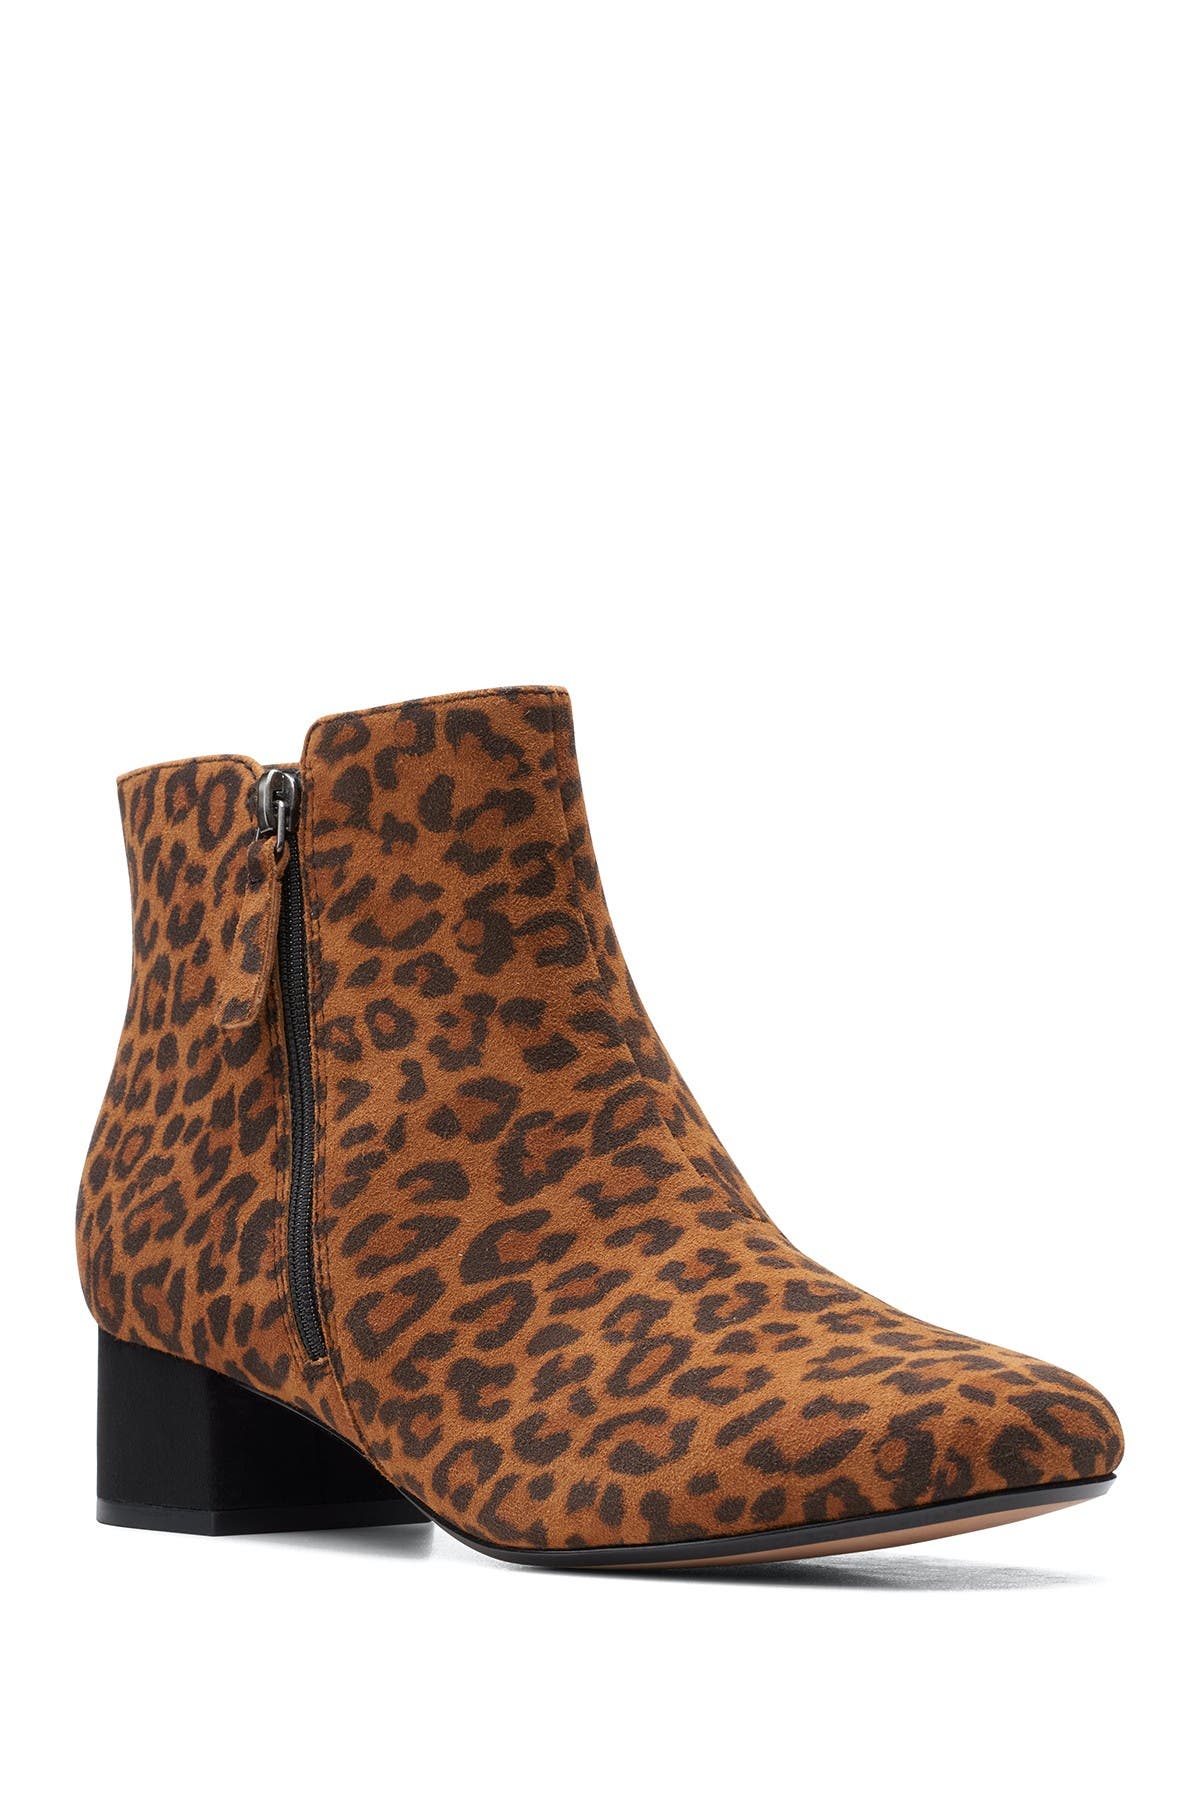 Clarks | Marilyn Leopard Boot 